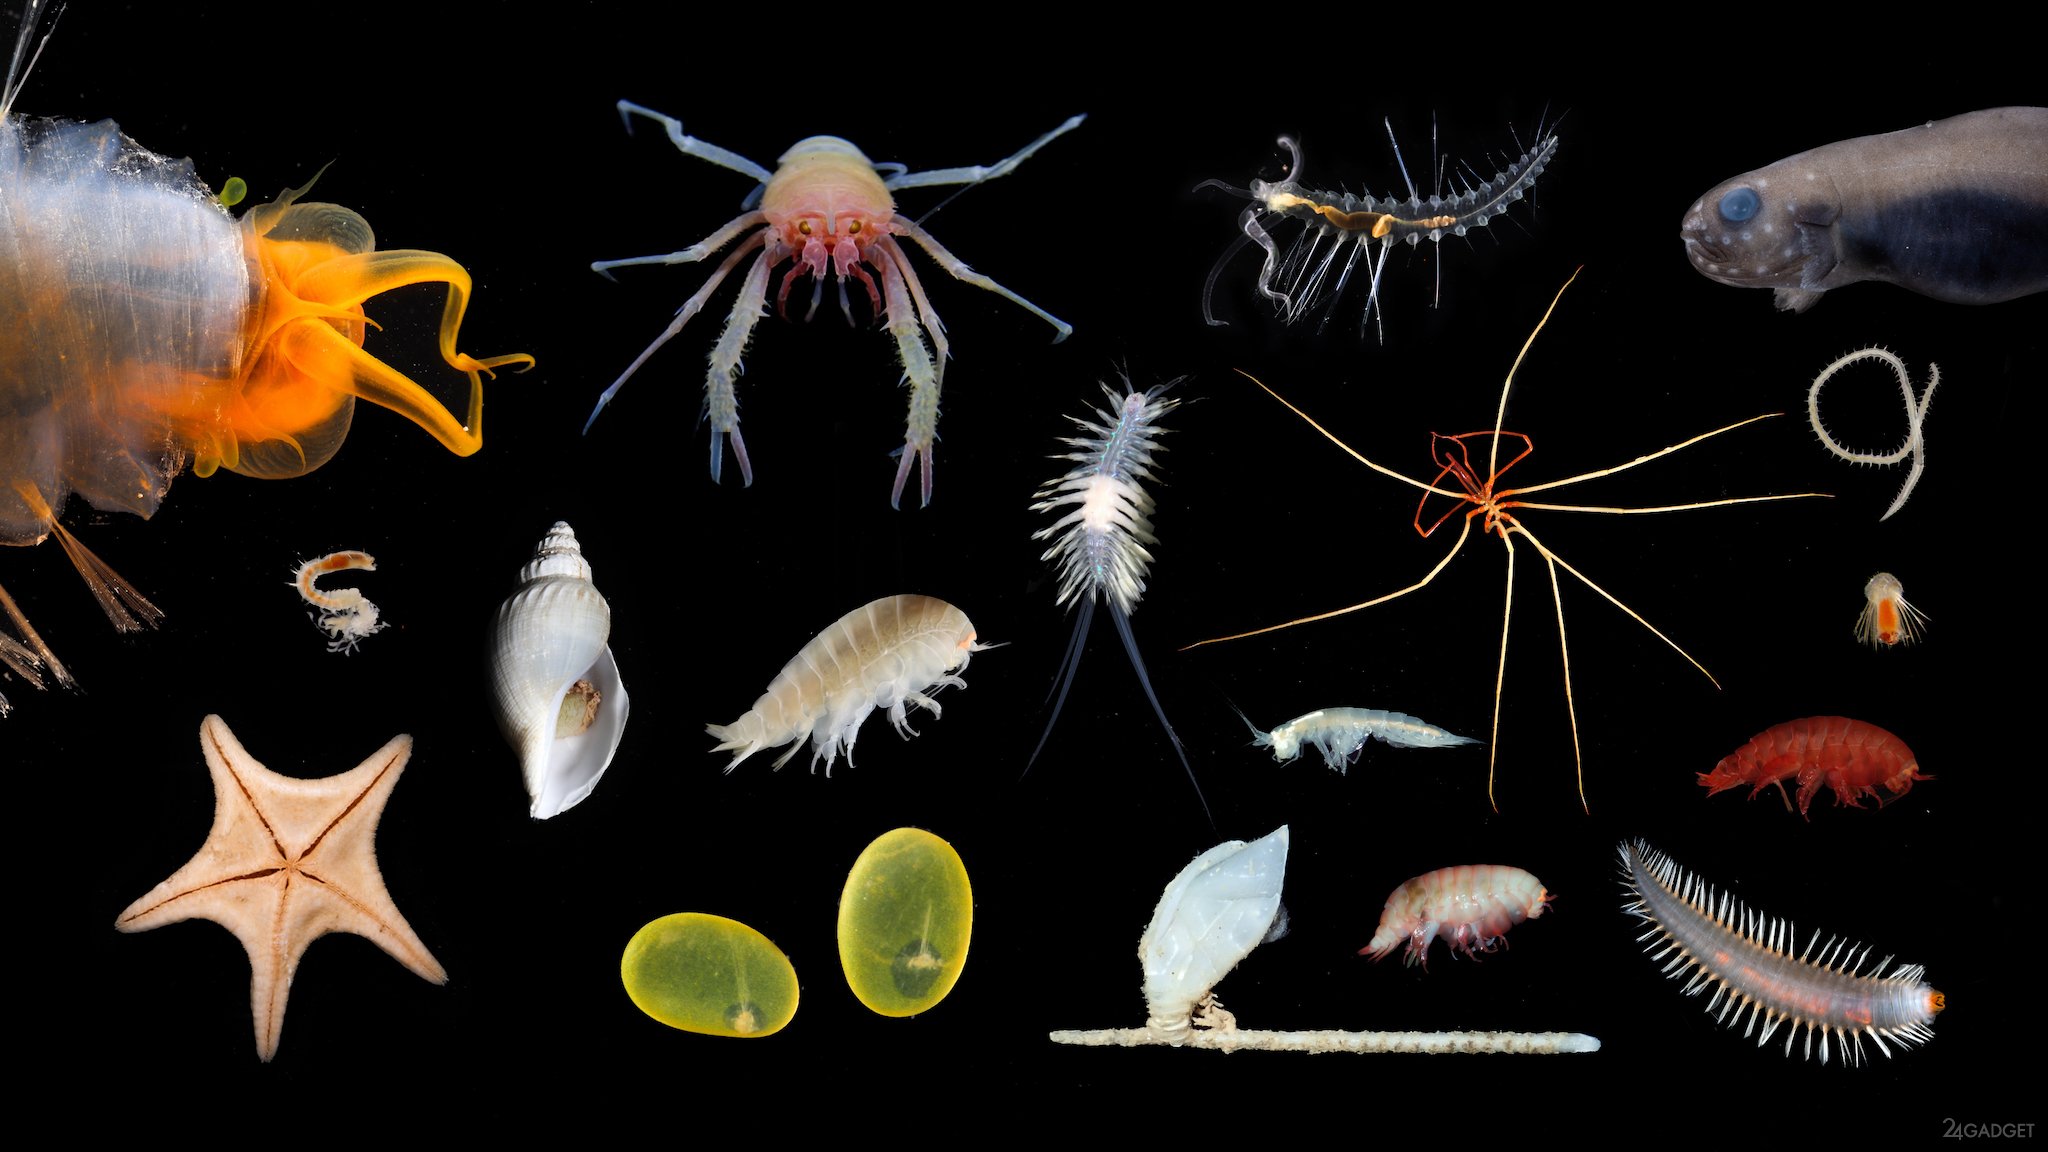 Живые обитатели океана. Обитатели морских глубин. Обитатели глубин океана. Беспозвоночные морские животные. Морские гидробионты.